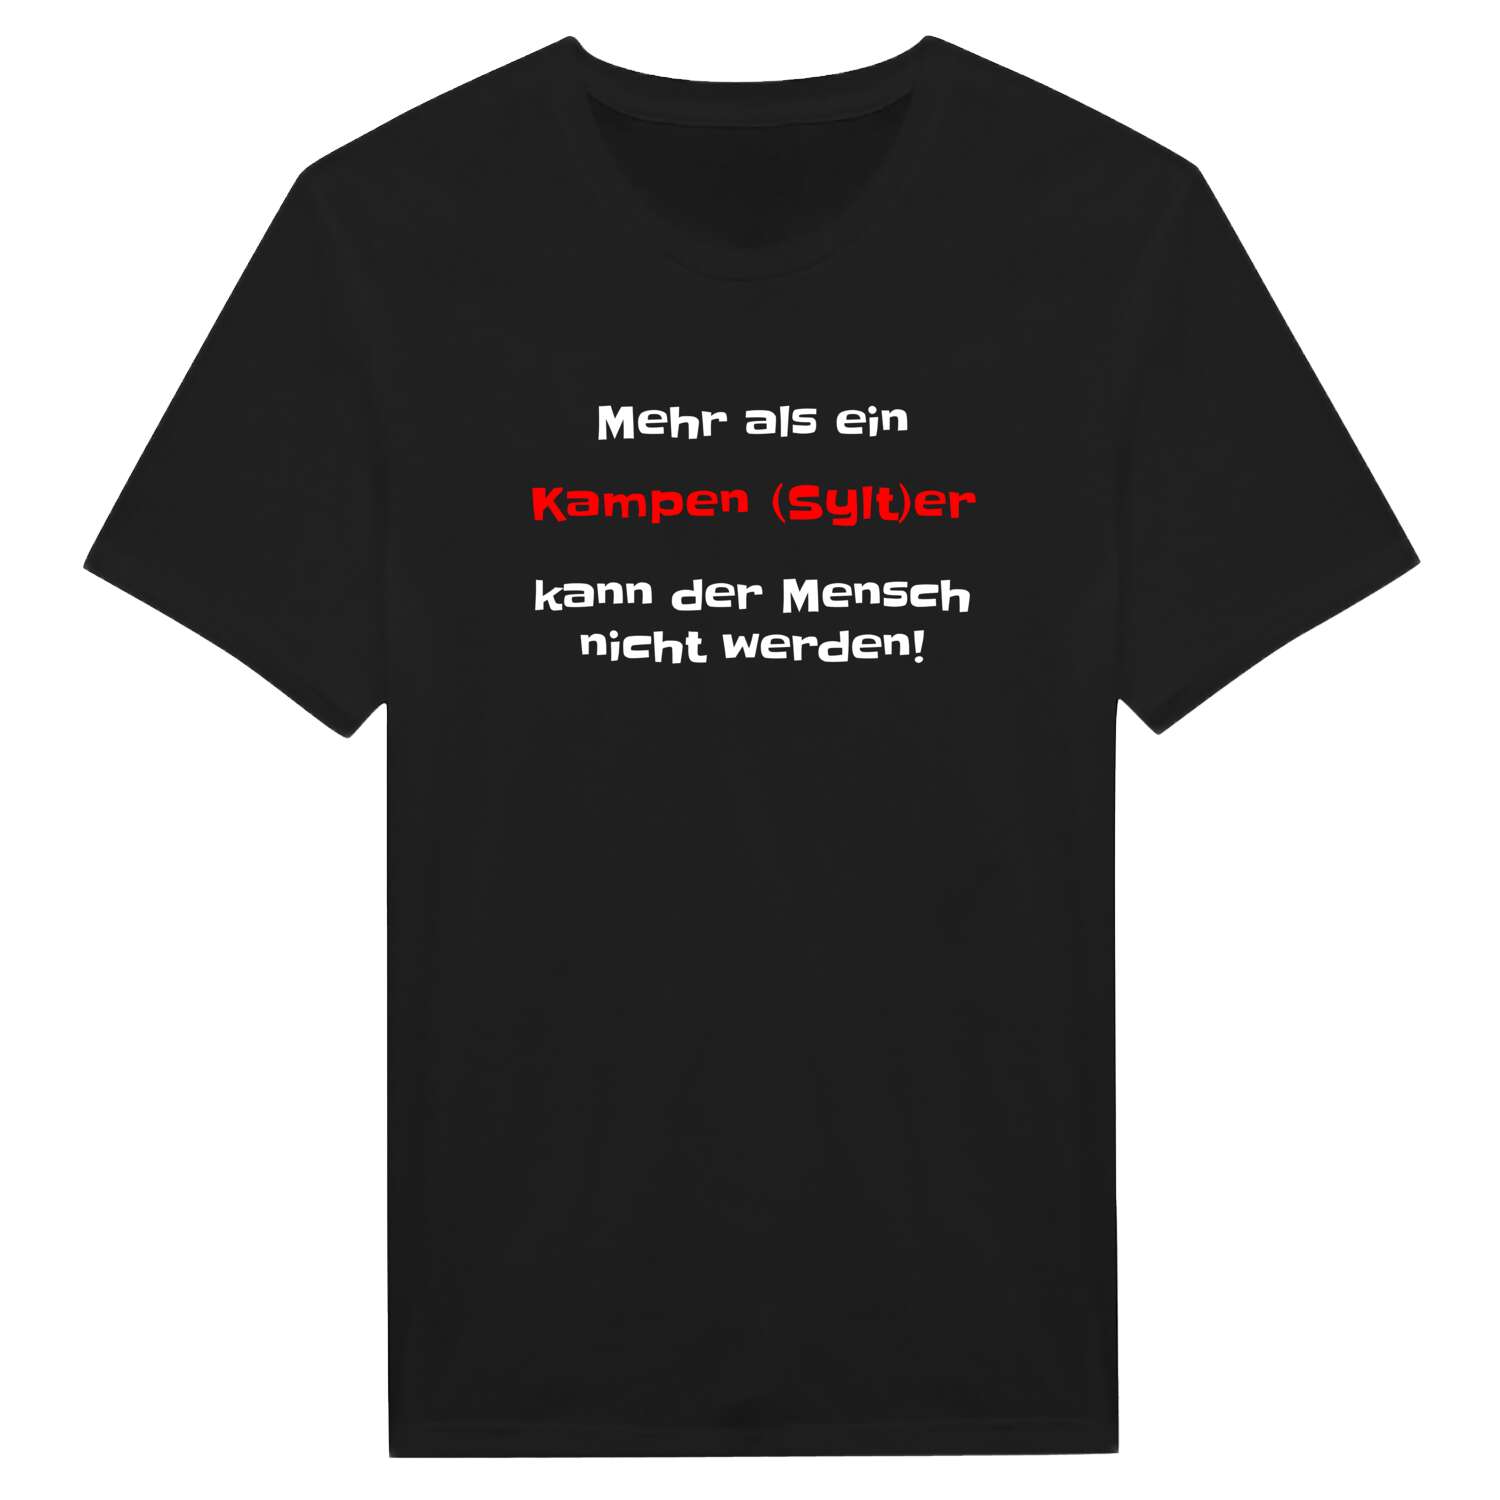 Kampen (Sylt) T-Shirt »Mehr als ein«